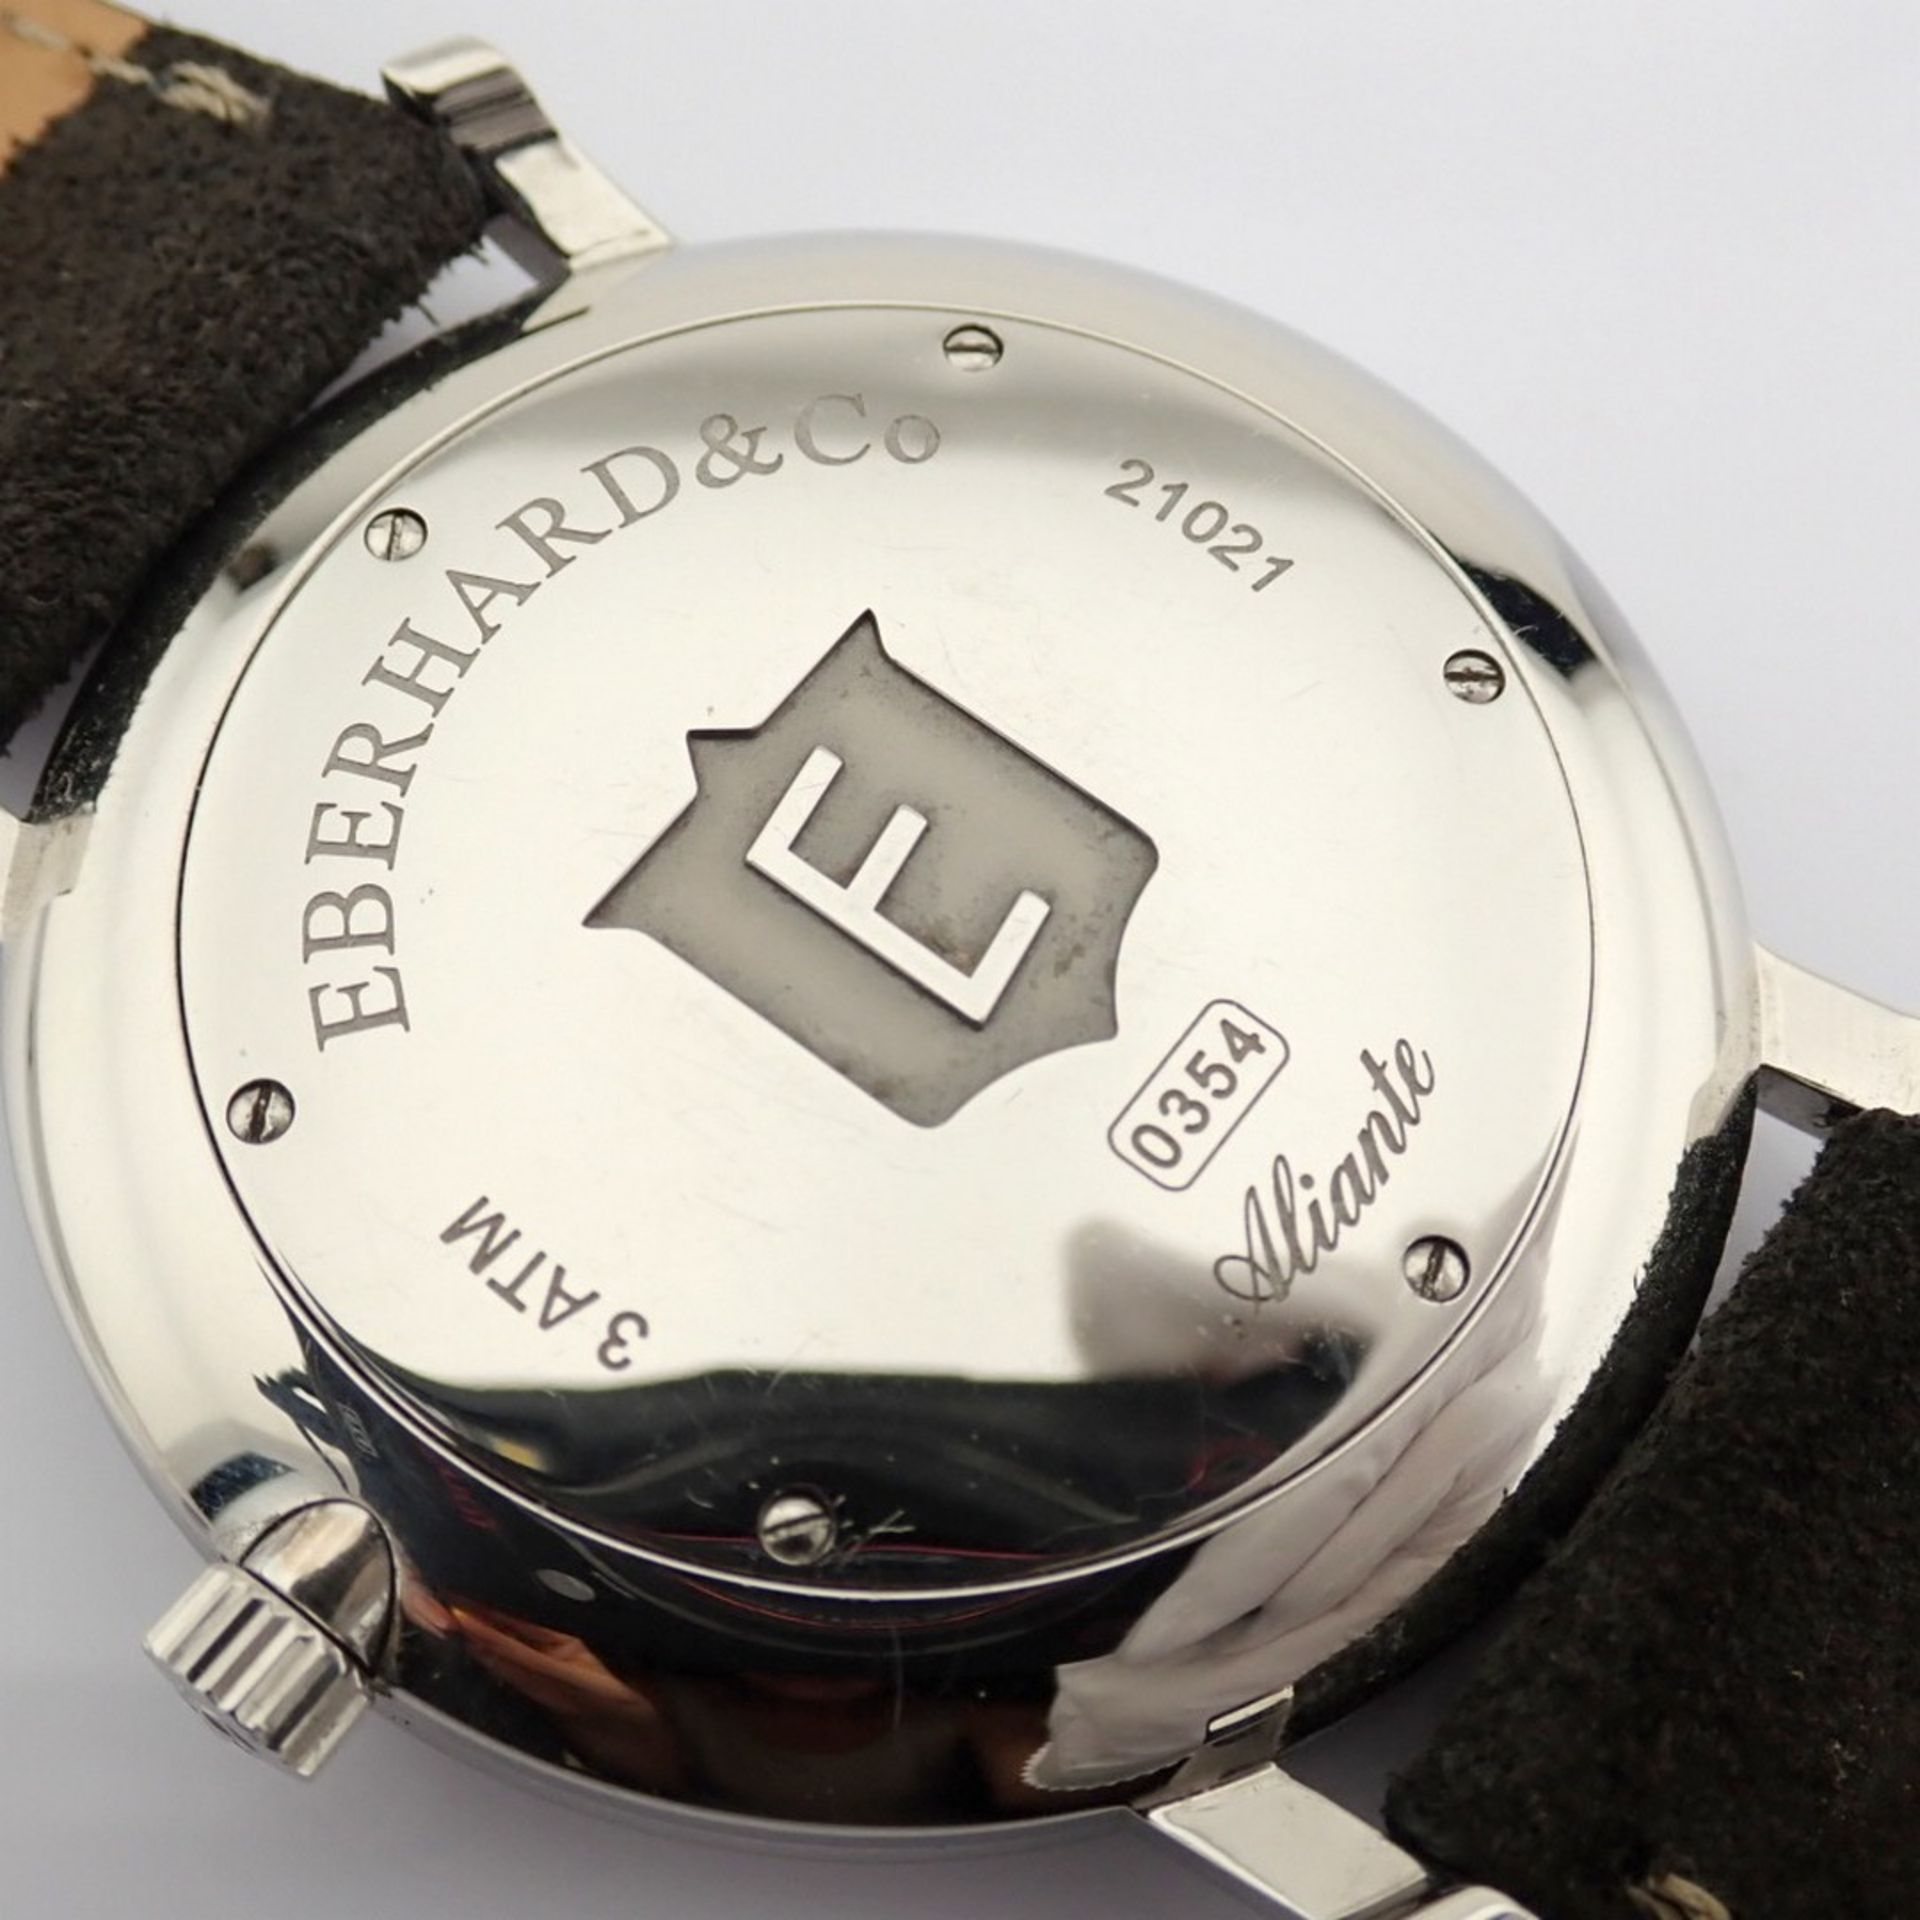 Eberhard & Co. / Alien Mecanisme & Tradition - Gentlemen's Steel Wristwatch - Image 8 of 12